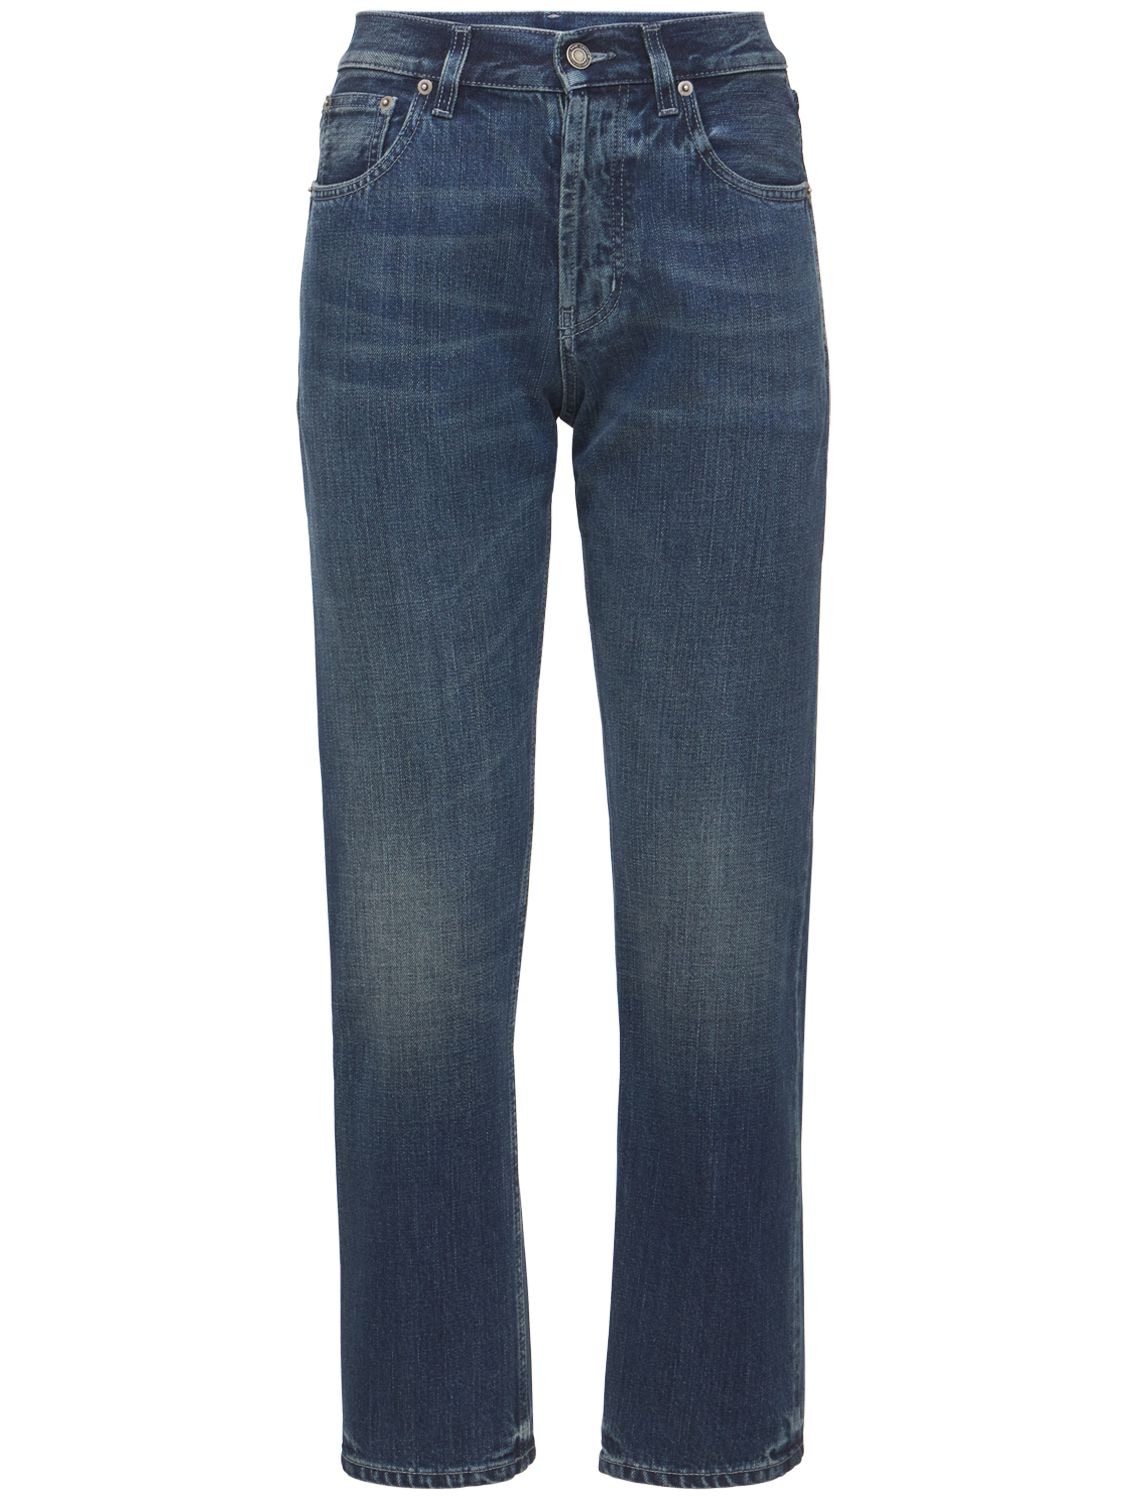 Saint Laurent Soft Cotton Denim Straight Leg Jeans